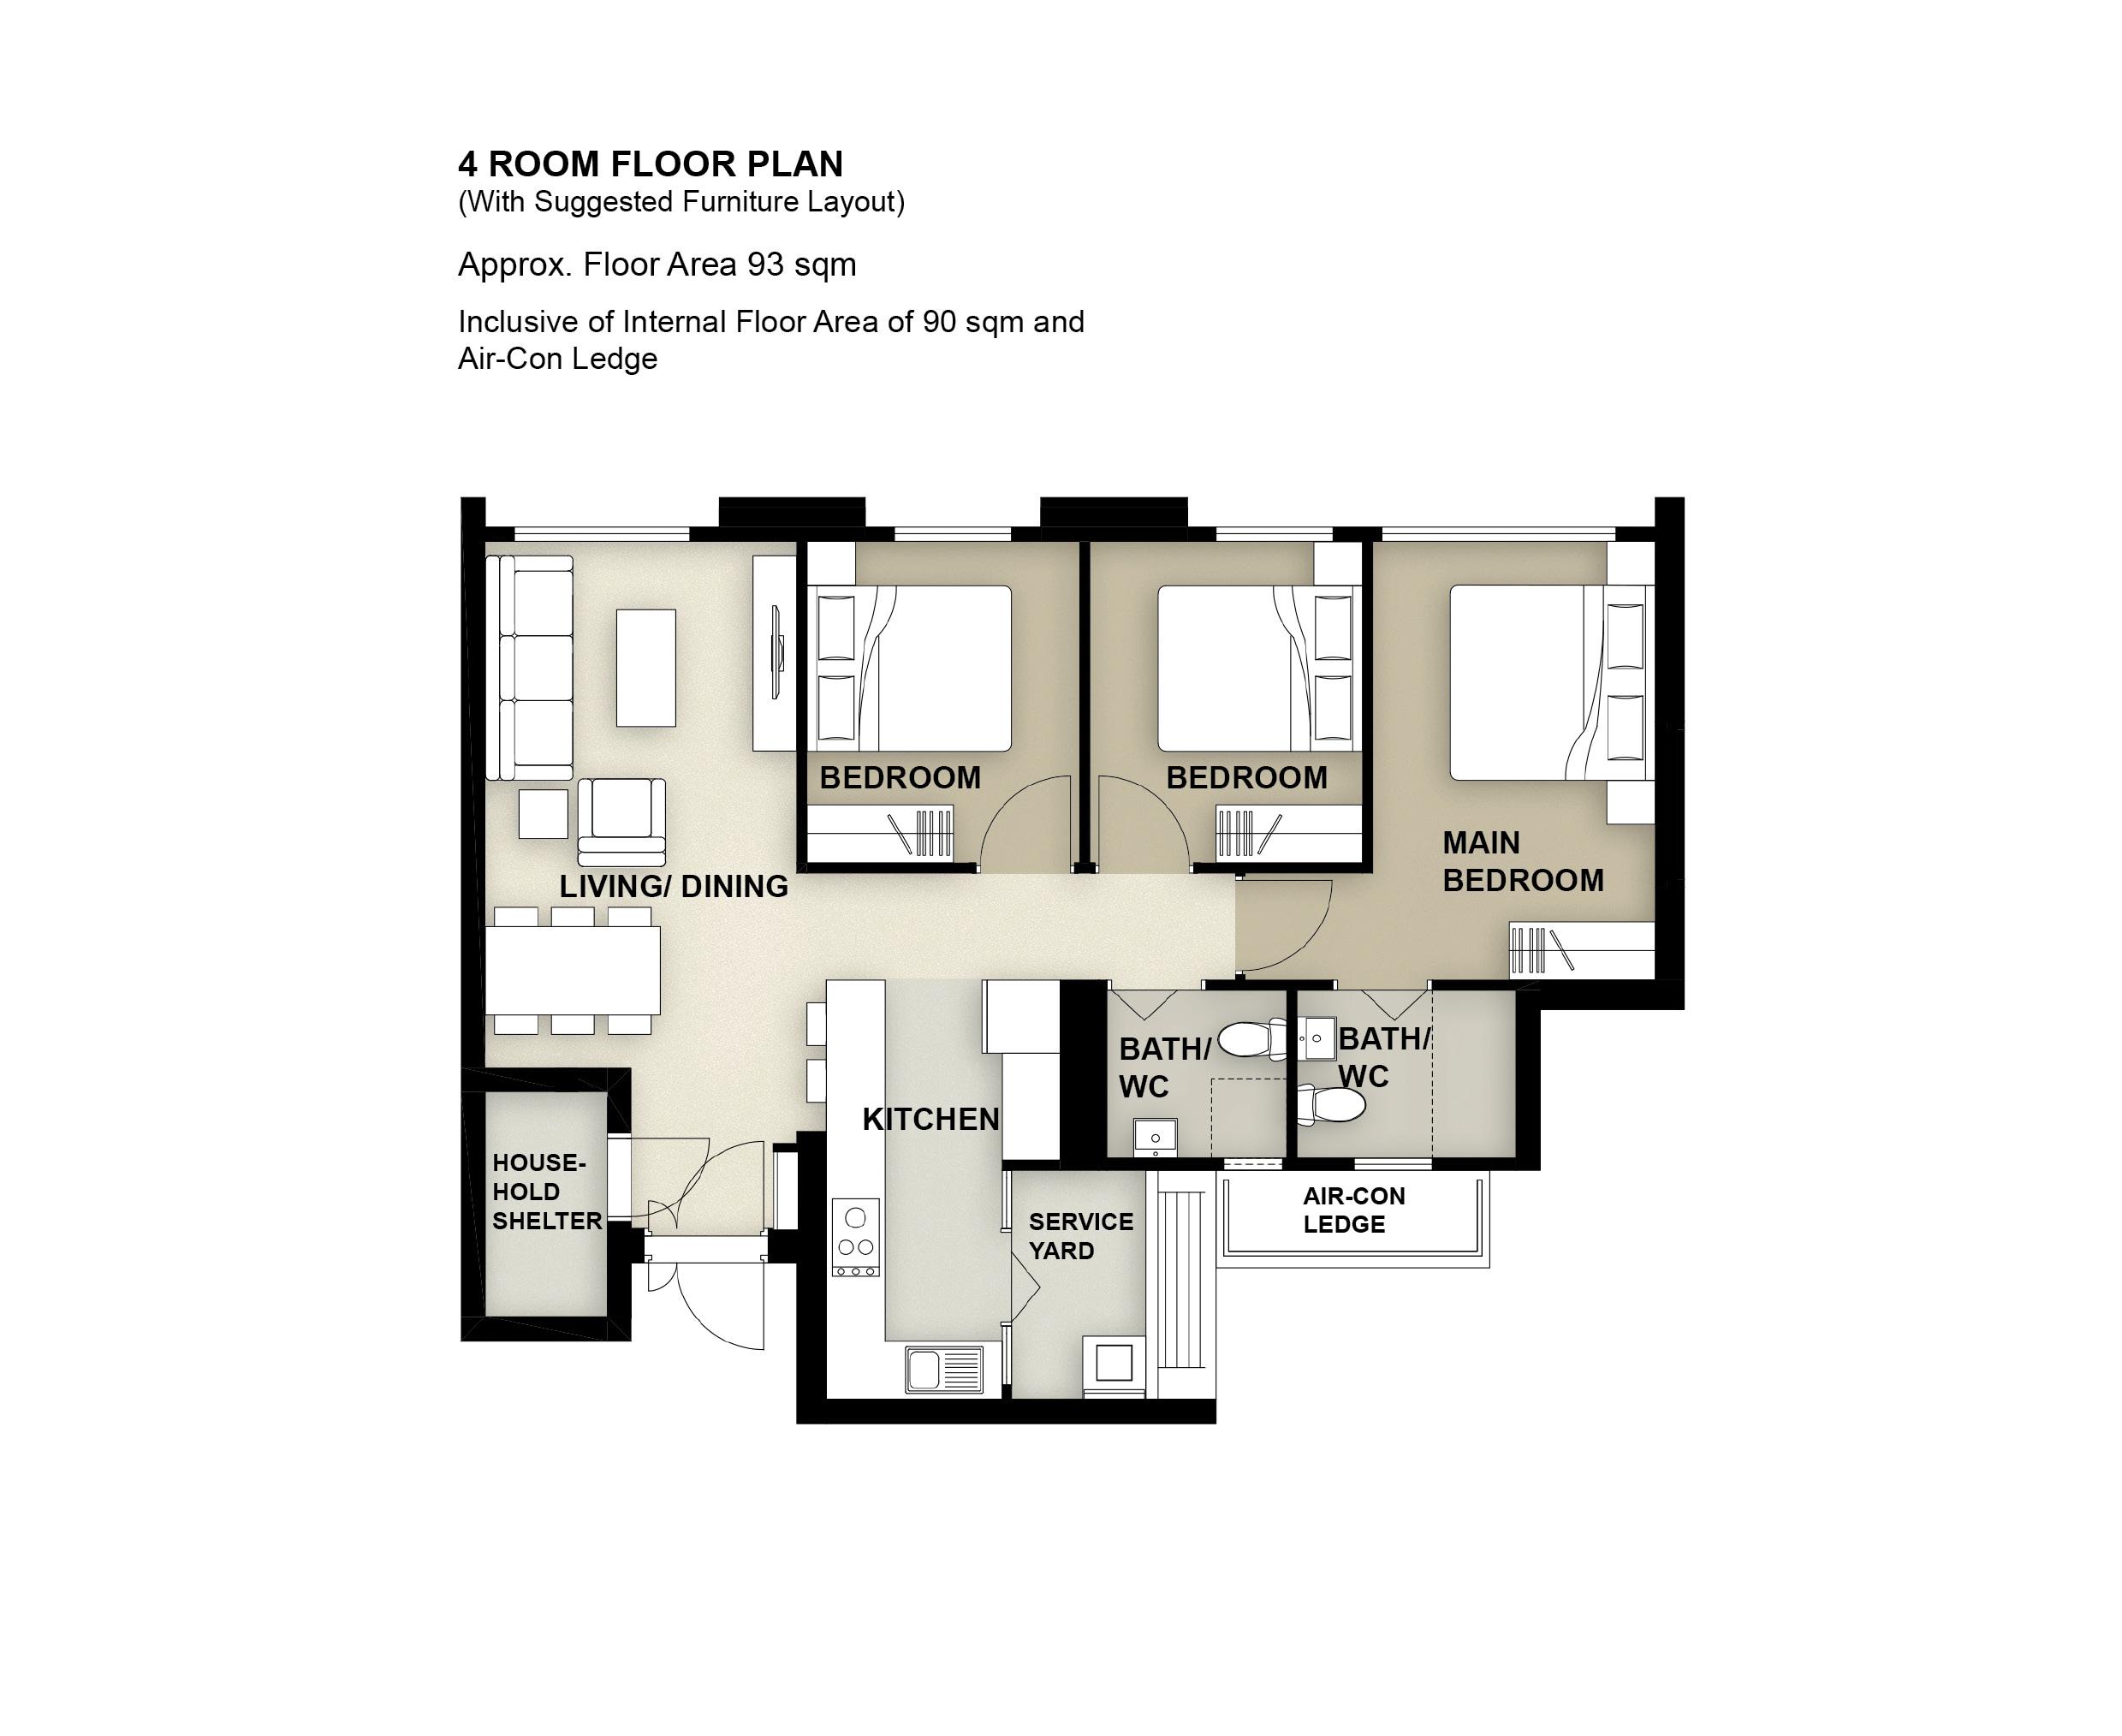 Central Weave @ AMK 4 Room Floor Plan